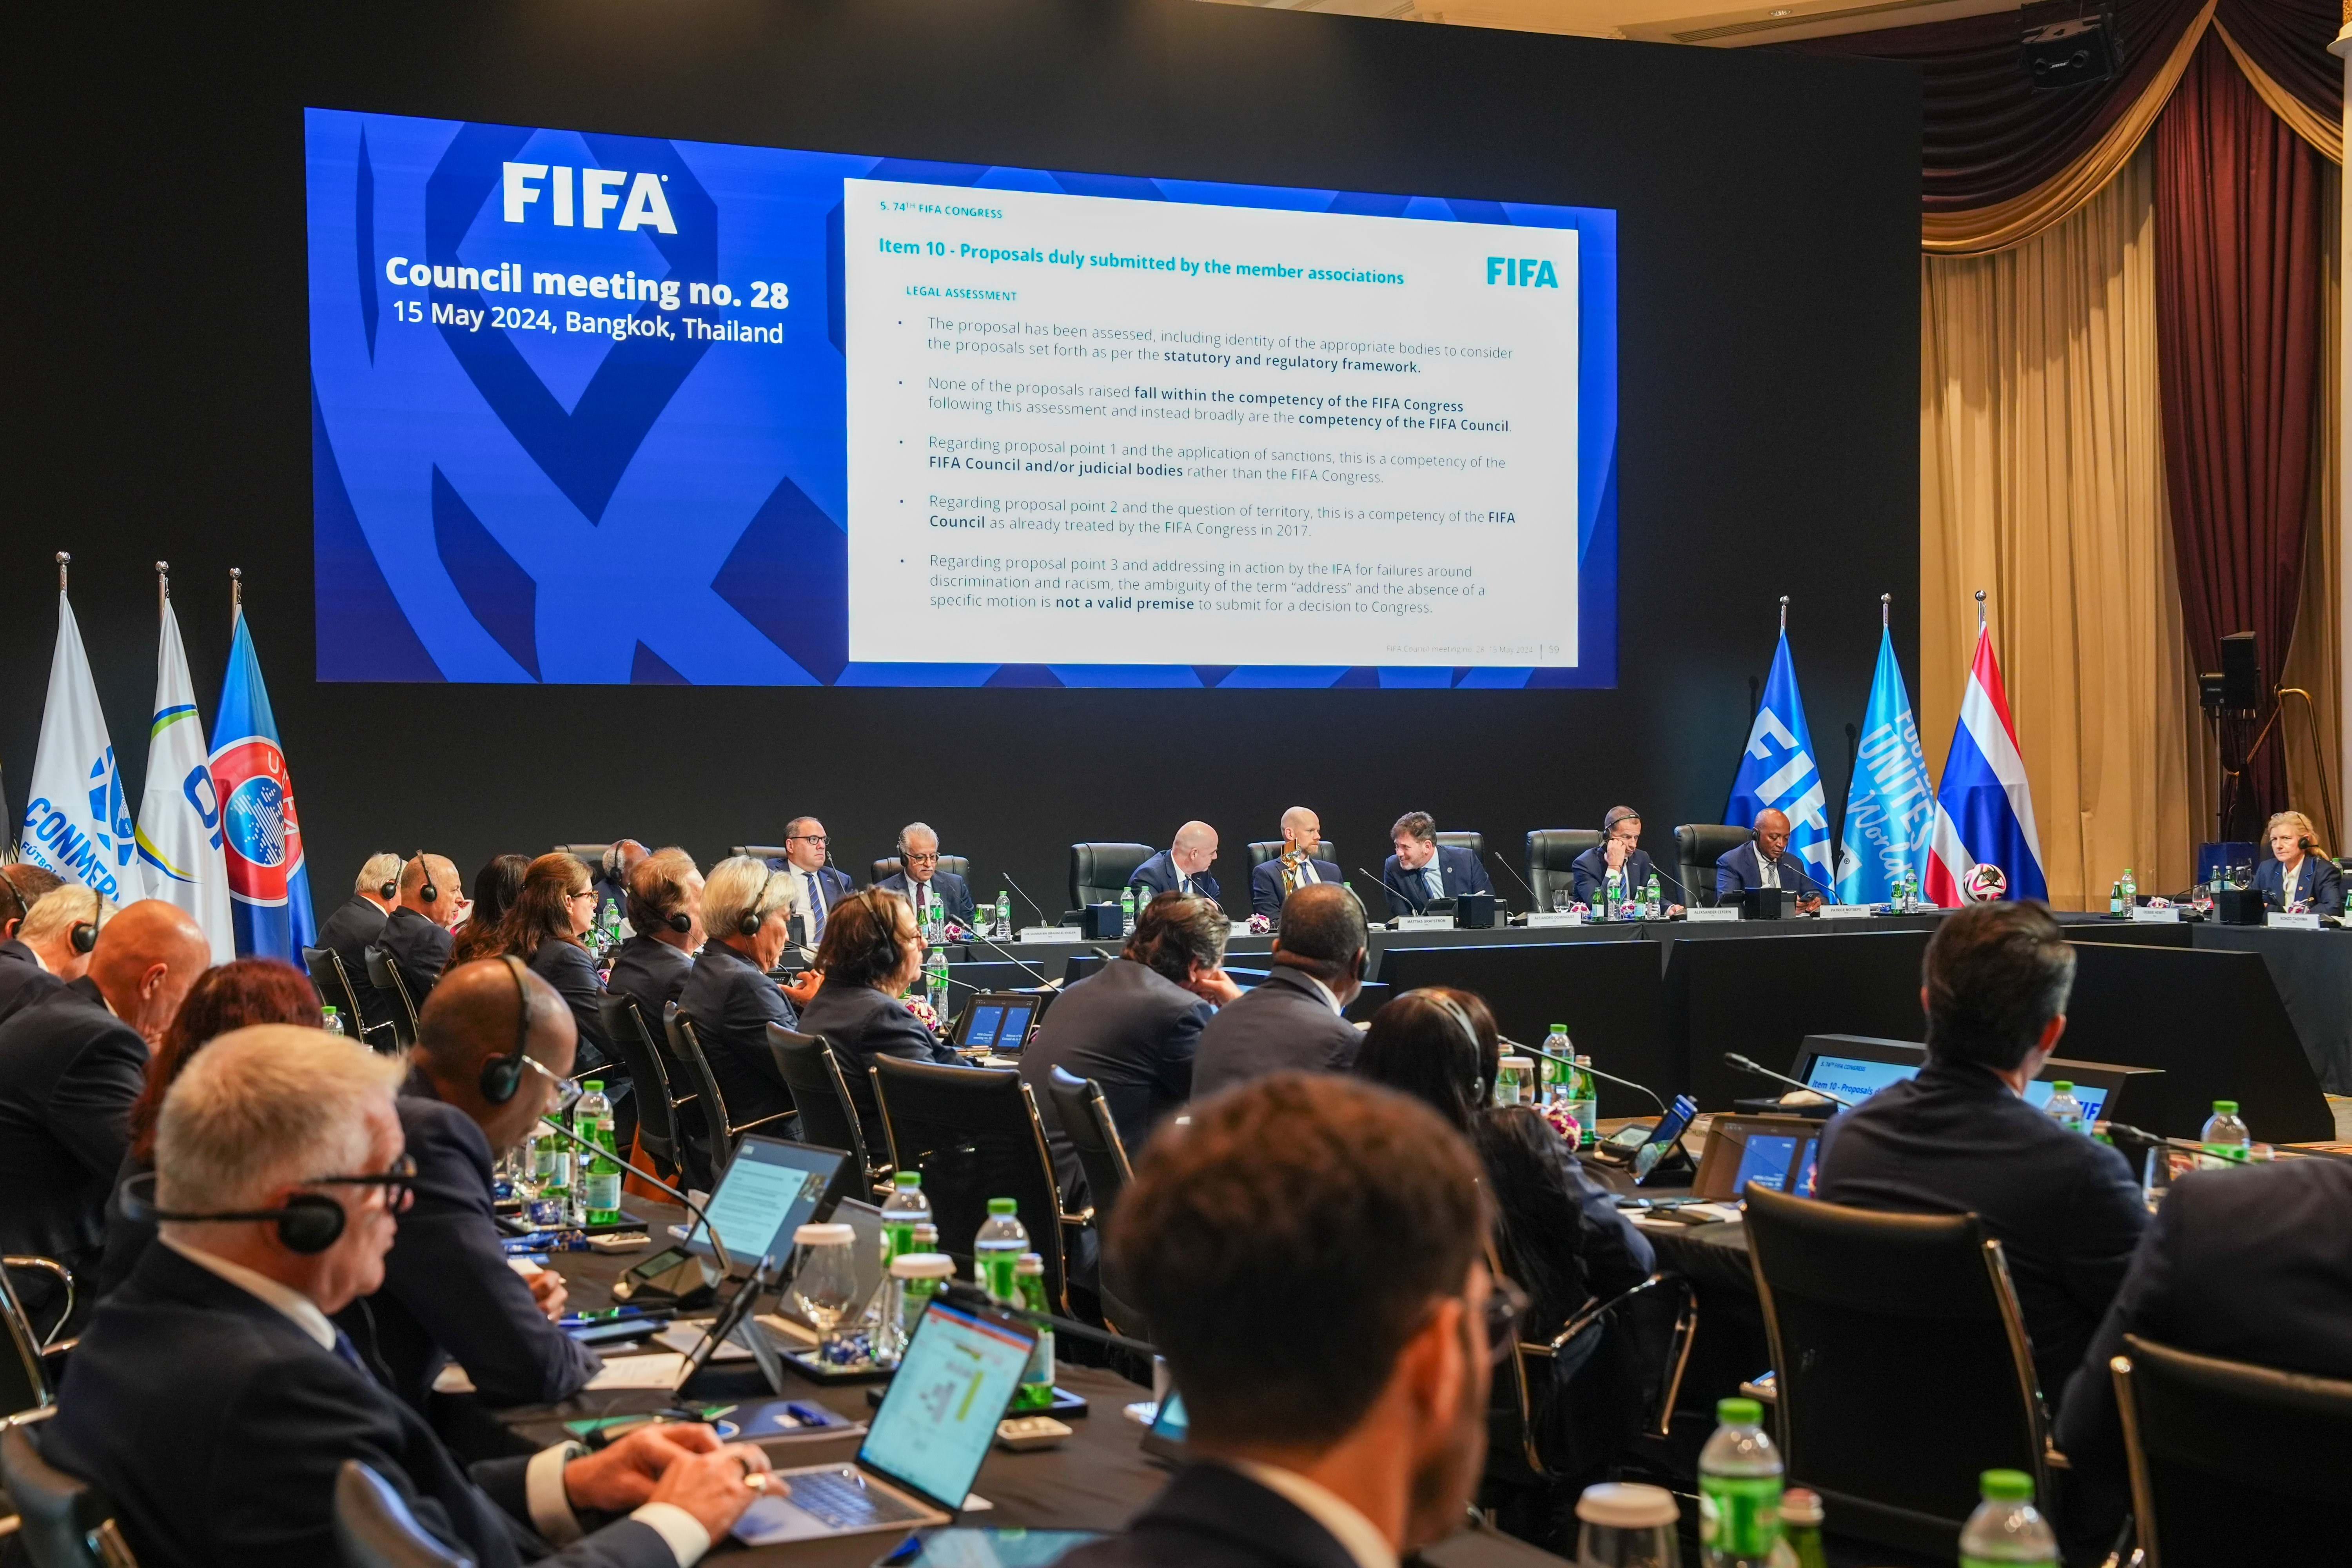 Il Consiglio della FIFA ha approvato il calendario degli incontri internazionali femminili del quadriennio 2026-2029